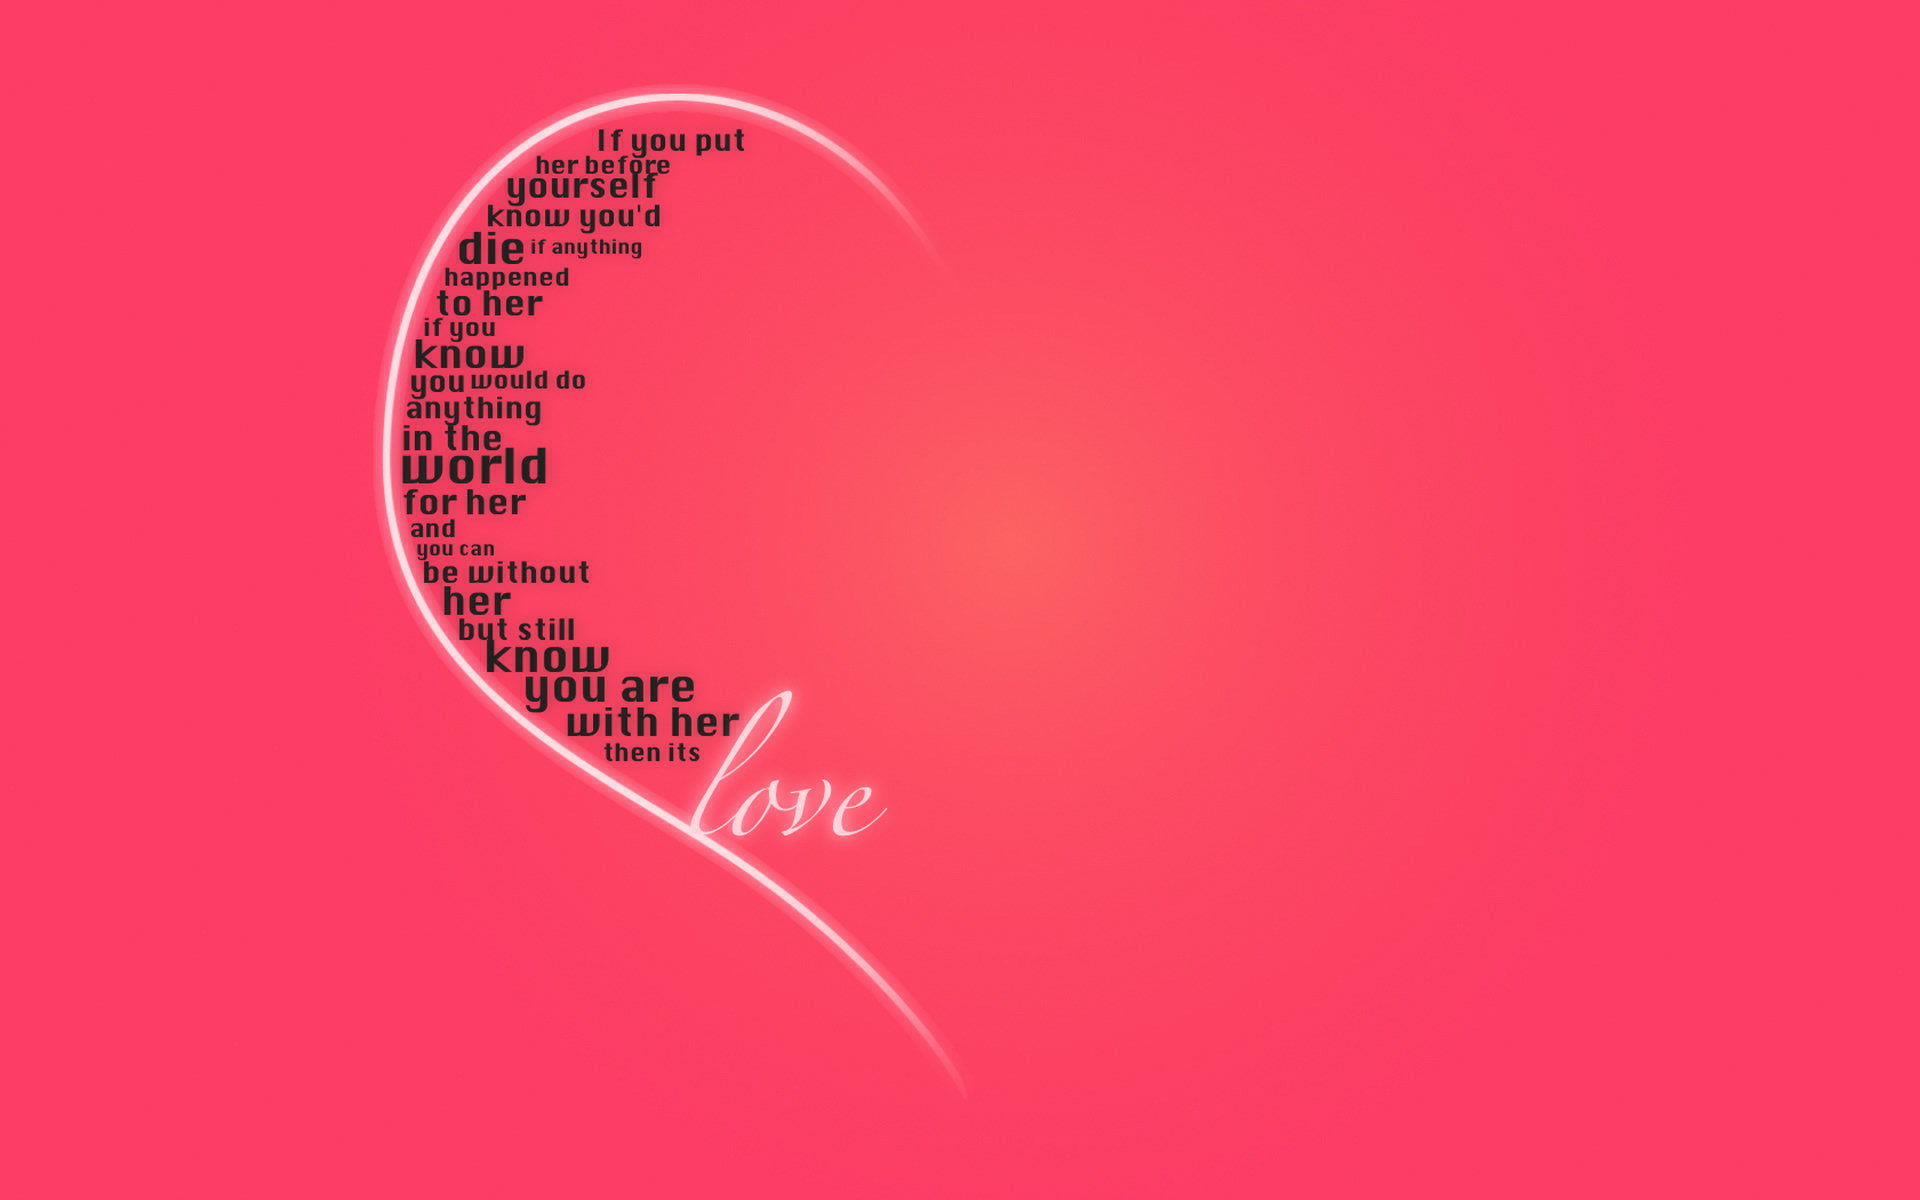 word, pink, love, artistic, statement, valentine's day